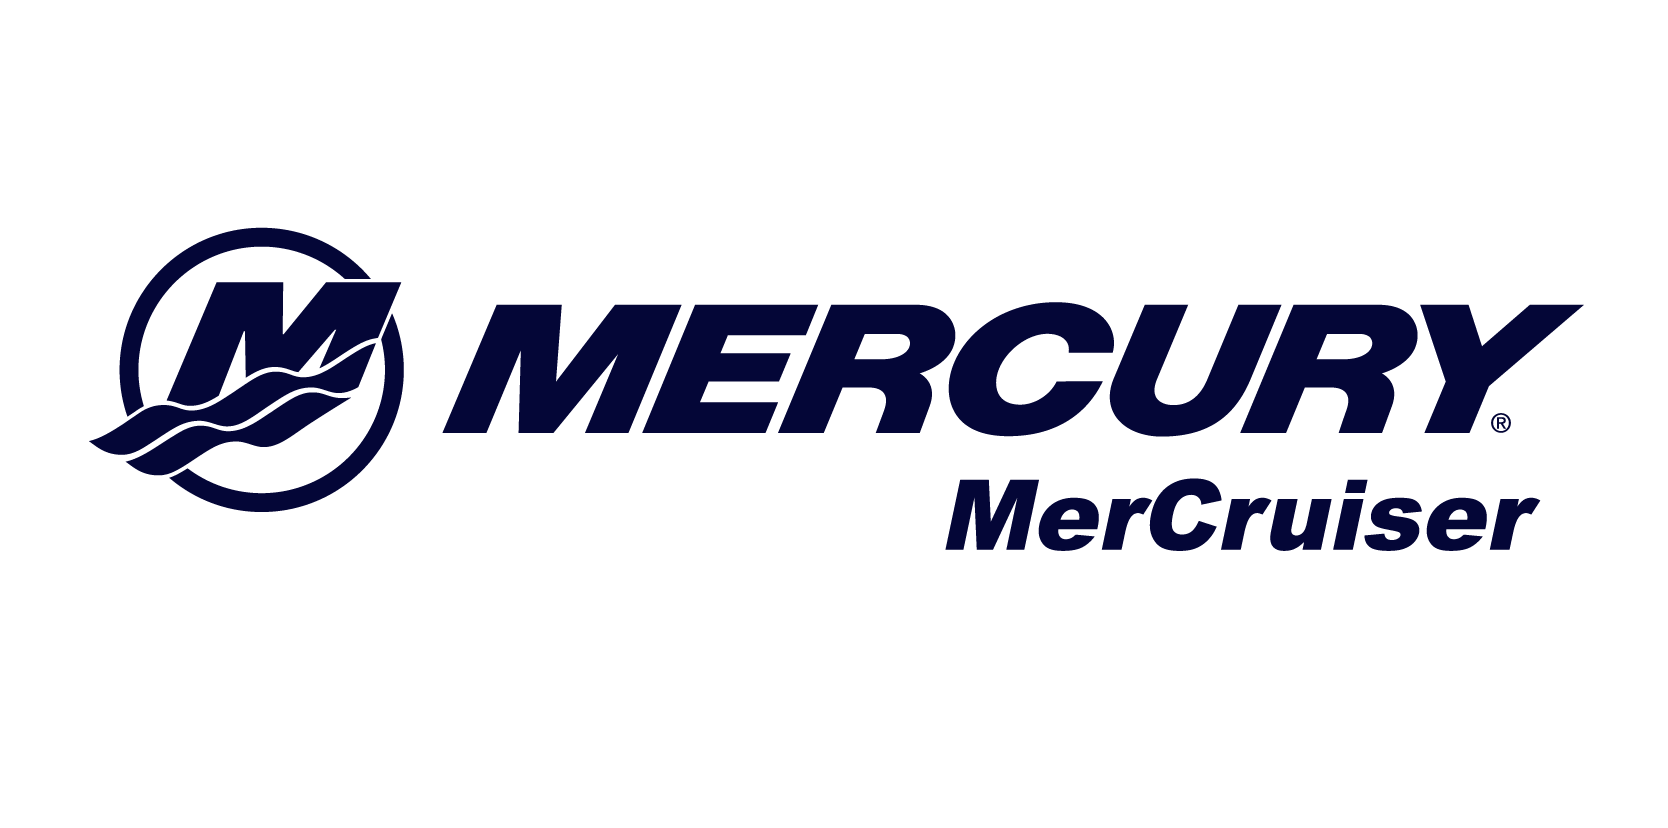 mercurymercruiser.png